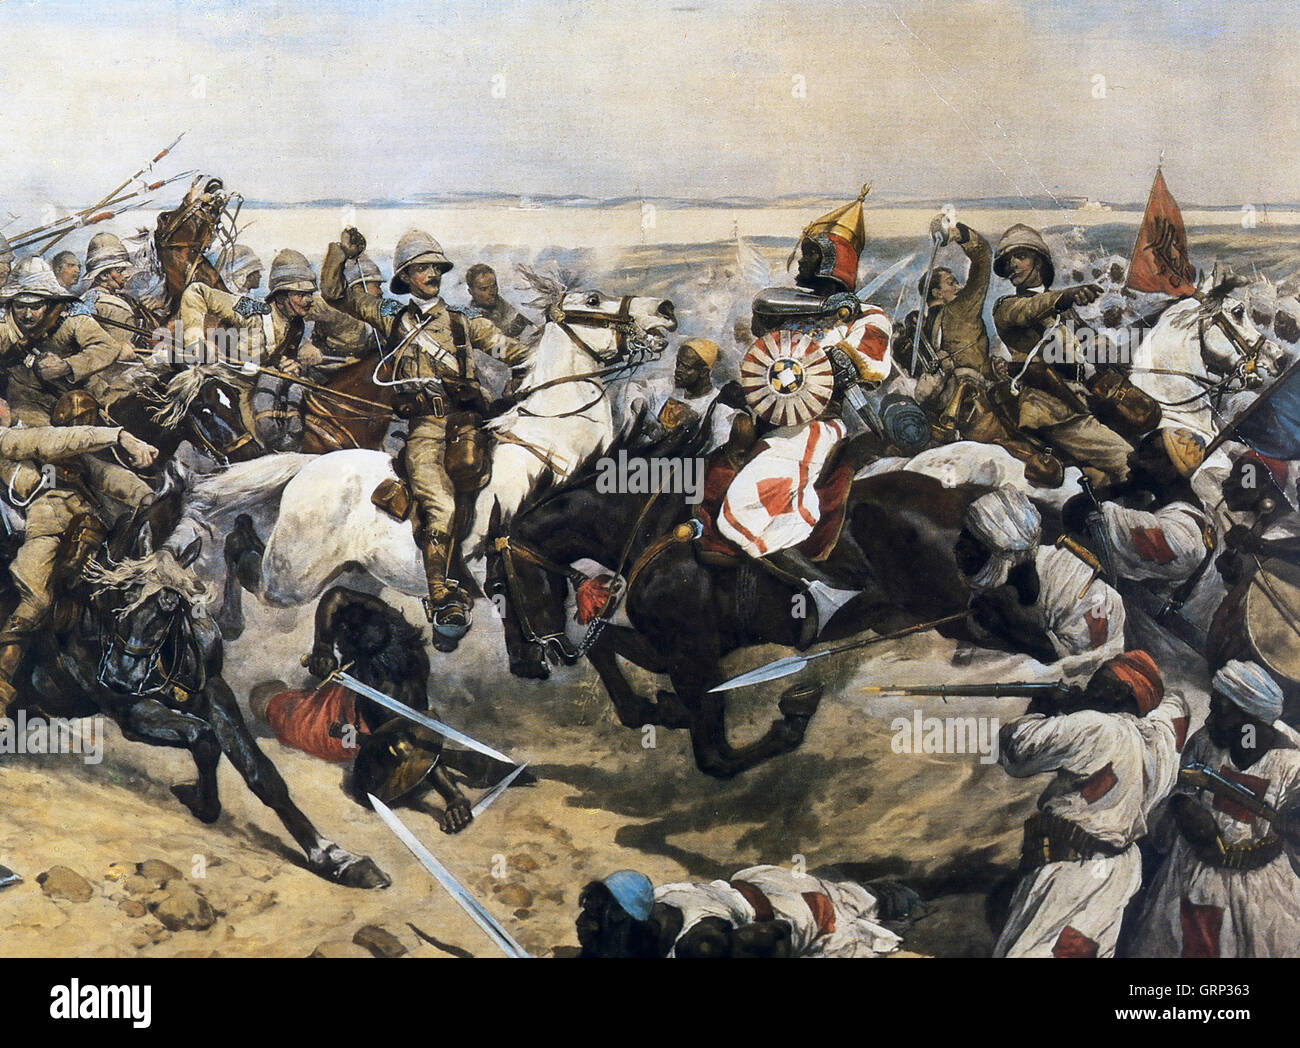 La bataille d'Omdurman, 2 septembre 1898. La charge de la 21 lancers - dans laquelle Winston Churchill a pris part - Peinture par Richard Woodville dans la même année. Banque D'Images